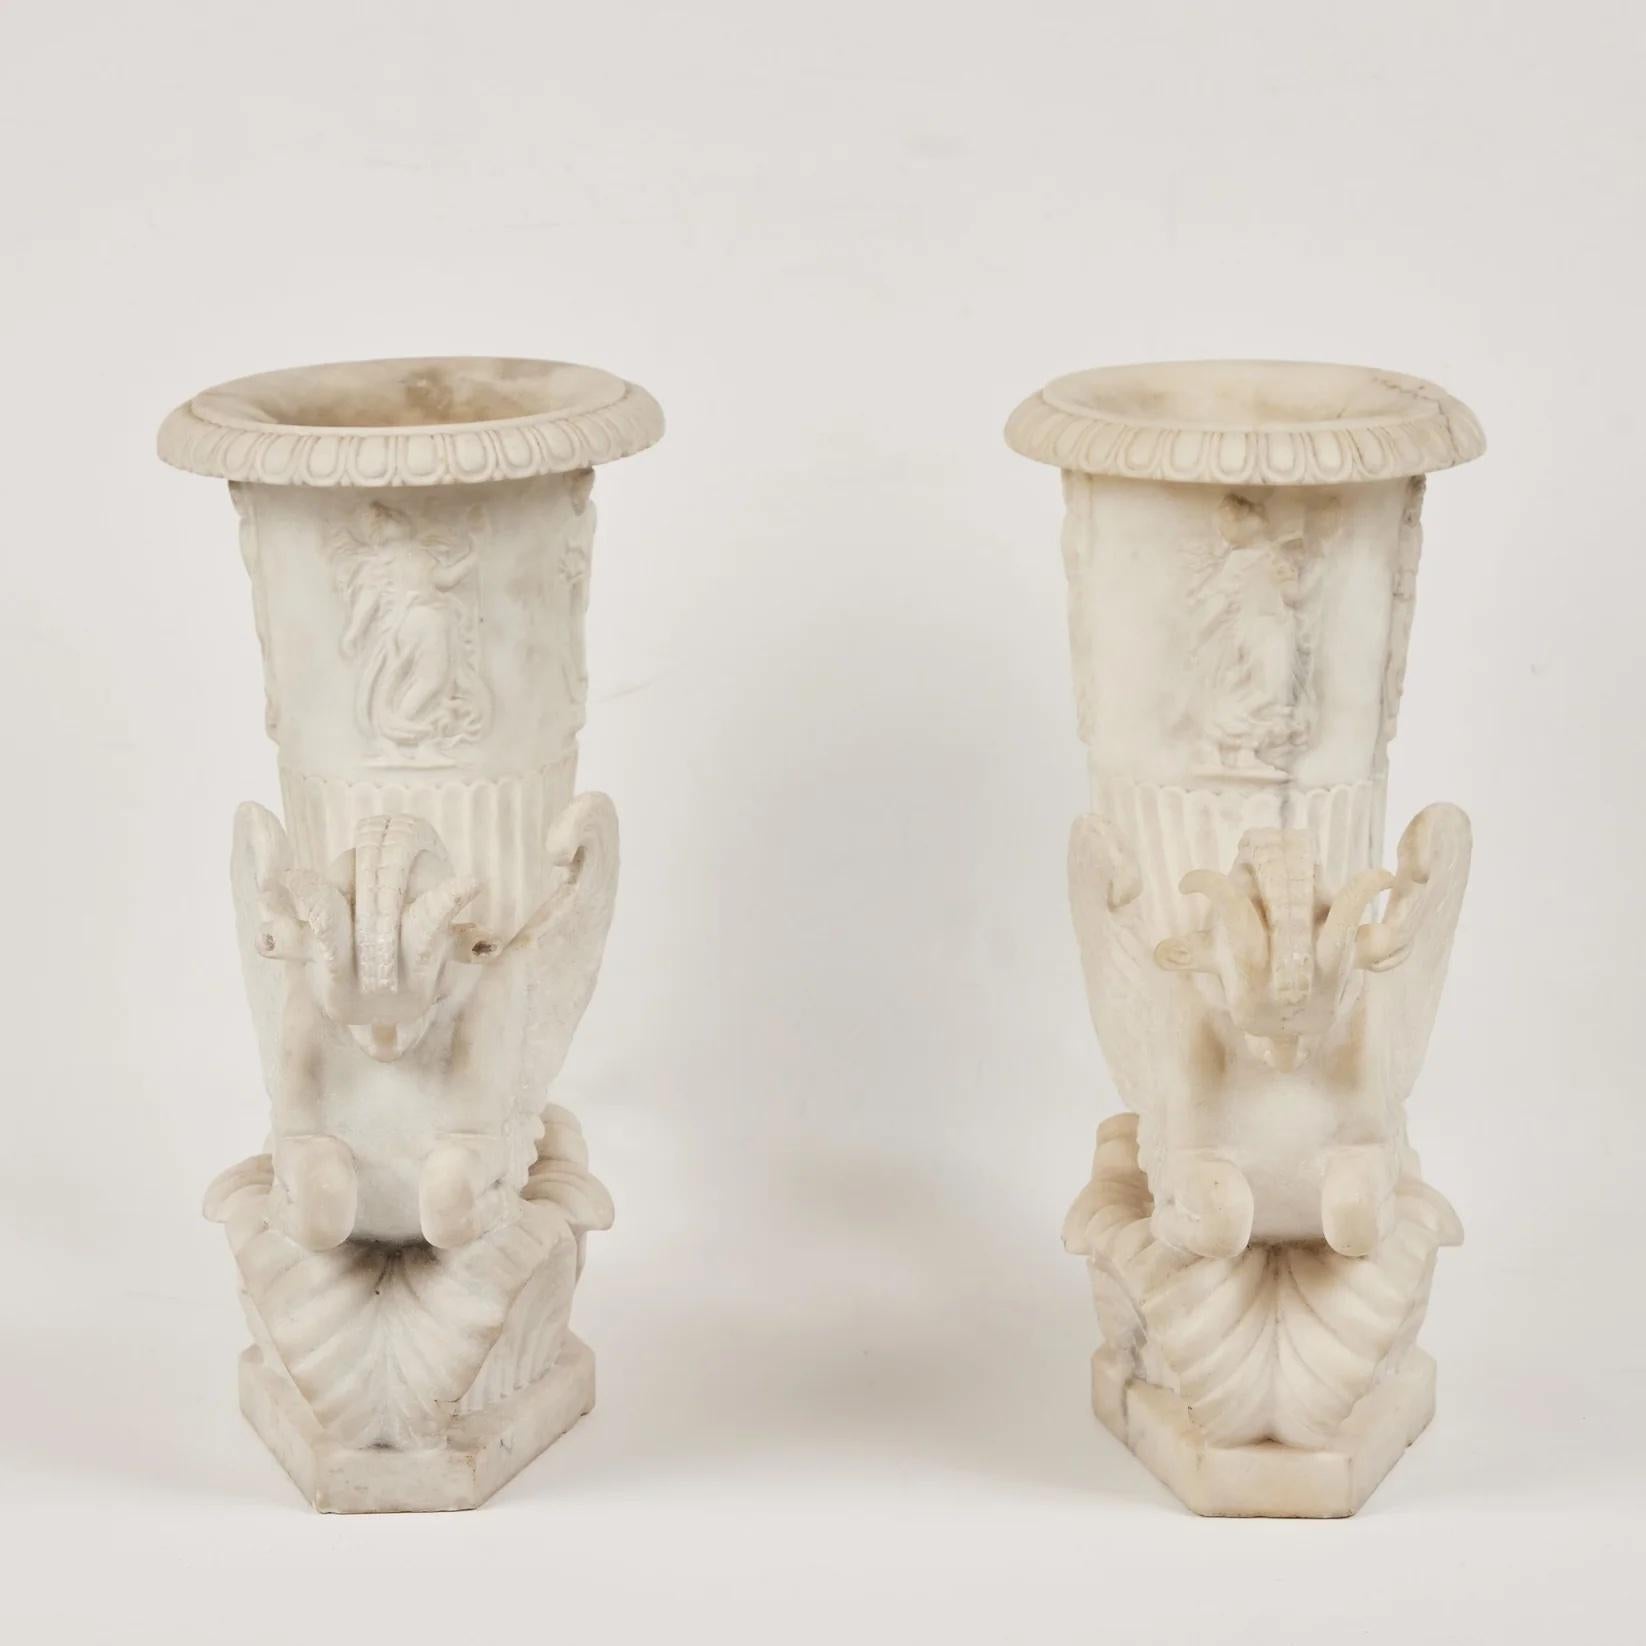 Paire d'hippocampes en marbre de Carrare magnifiquement sculptés à gauche et à droite, avec des ailes et des cornes de bélier. Chaque figure s'élève sur une base de feuilles stylisées et recourbées et se termine par des vases ornés de figures de